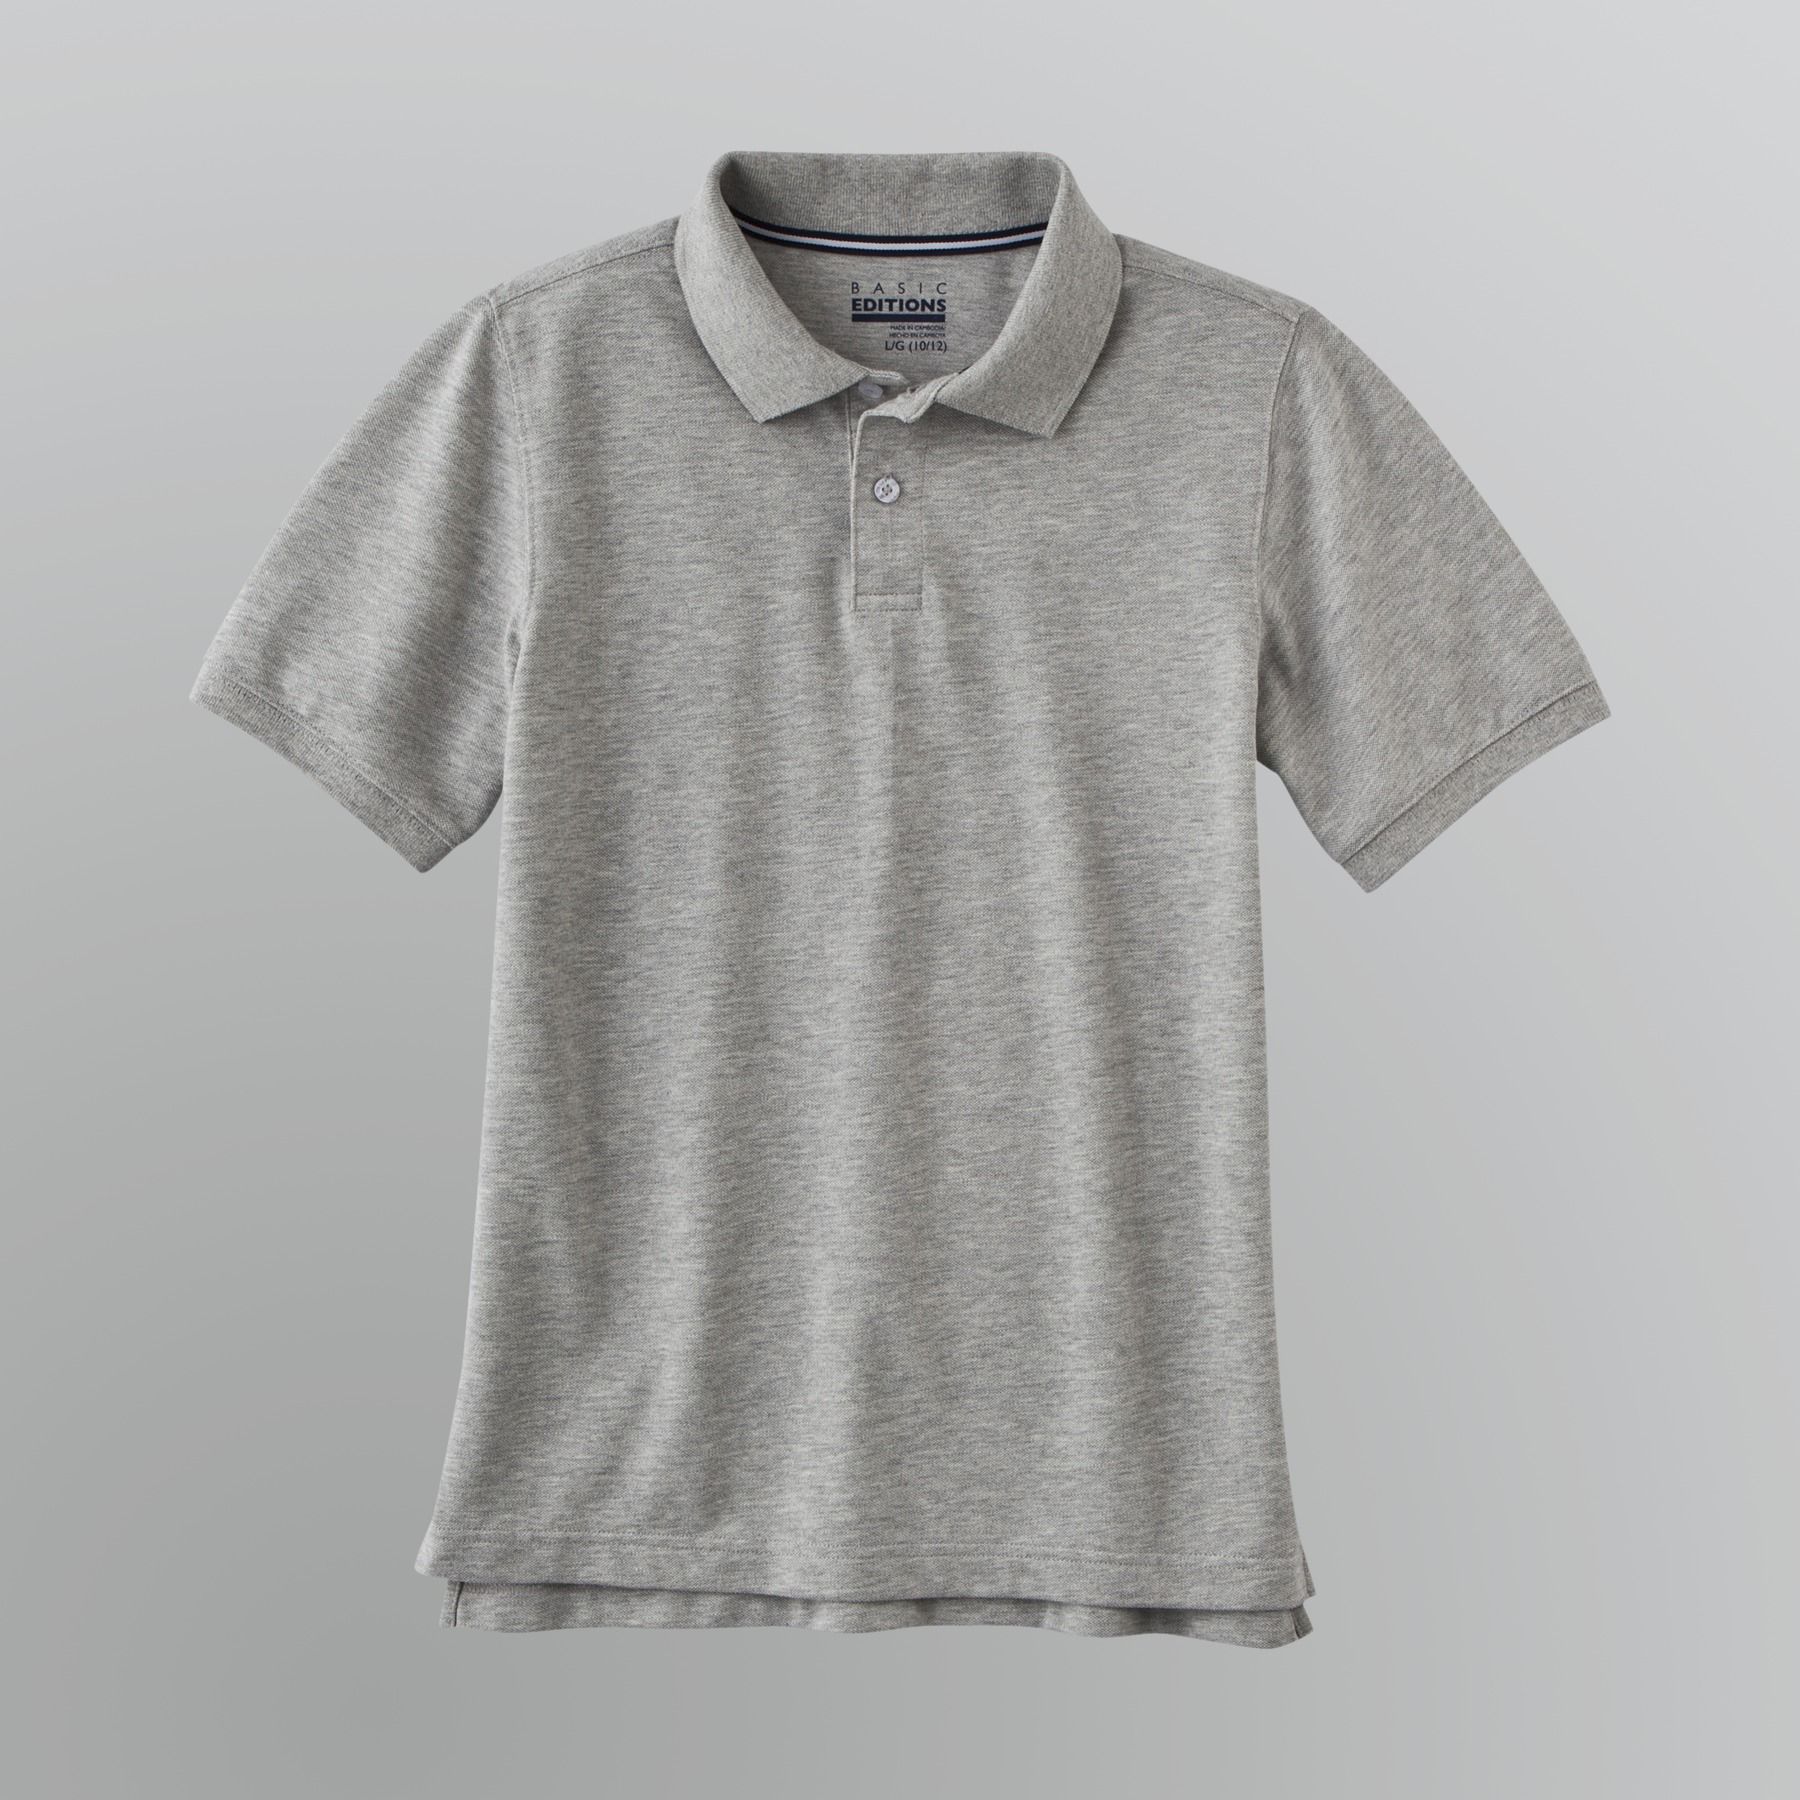 Basic Editions Boy's Pique Polo Shirt